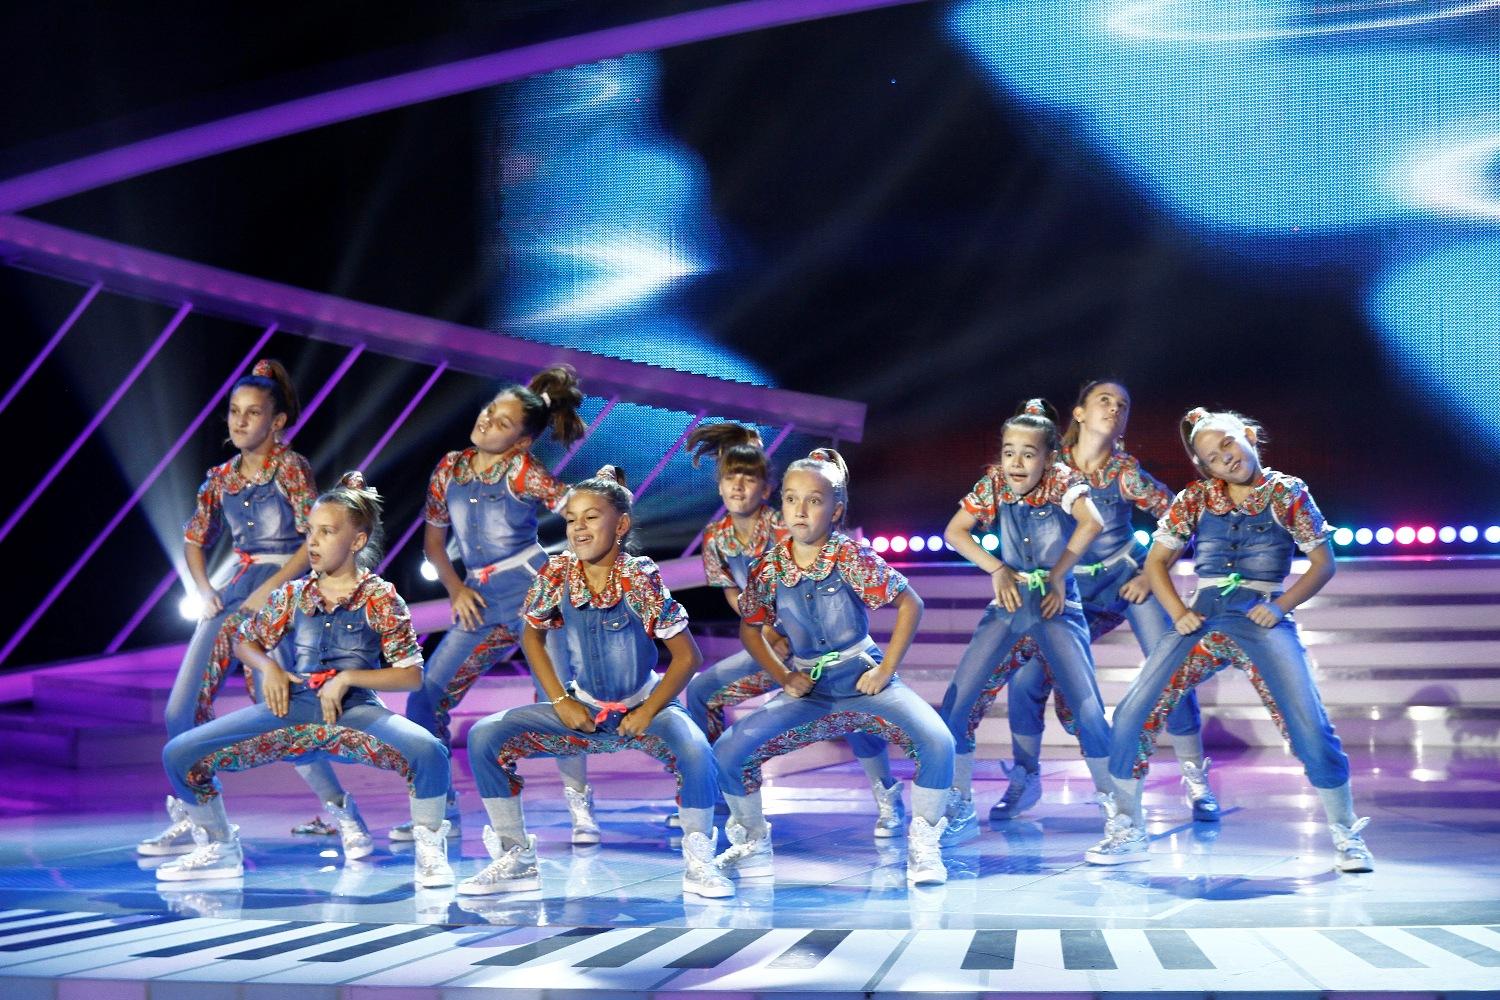 Switch Crew, nouă fetițe puse pe șotii, dar extrem de talentate la dans!